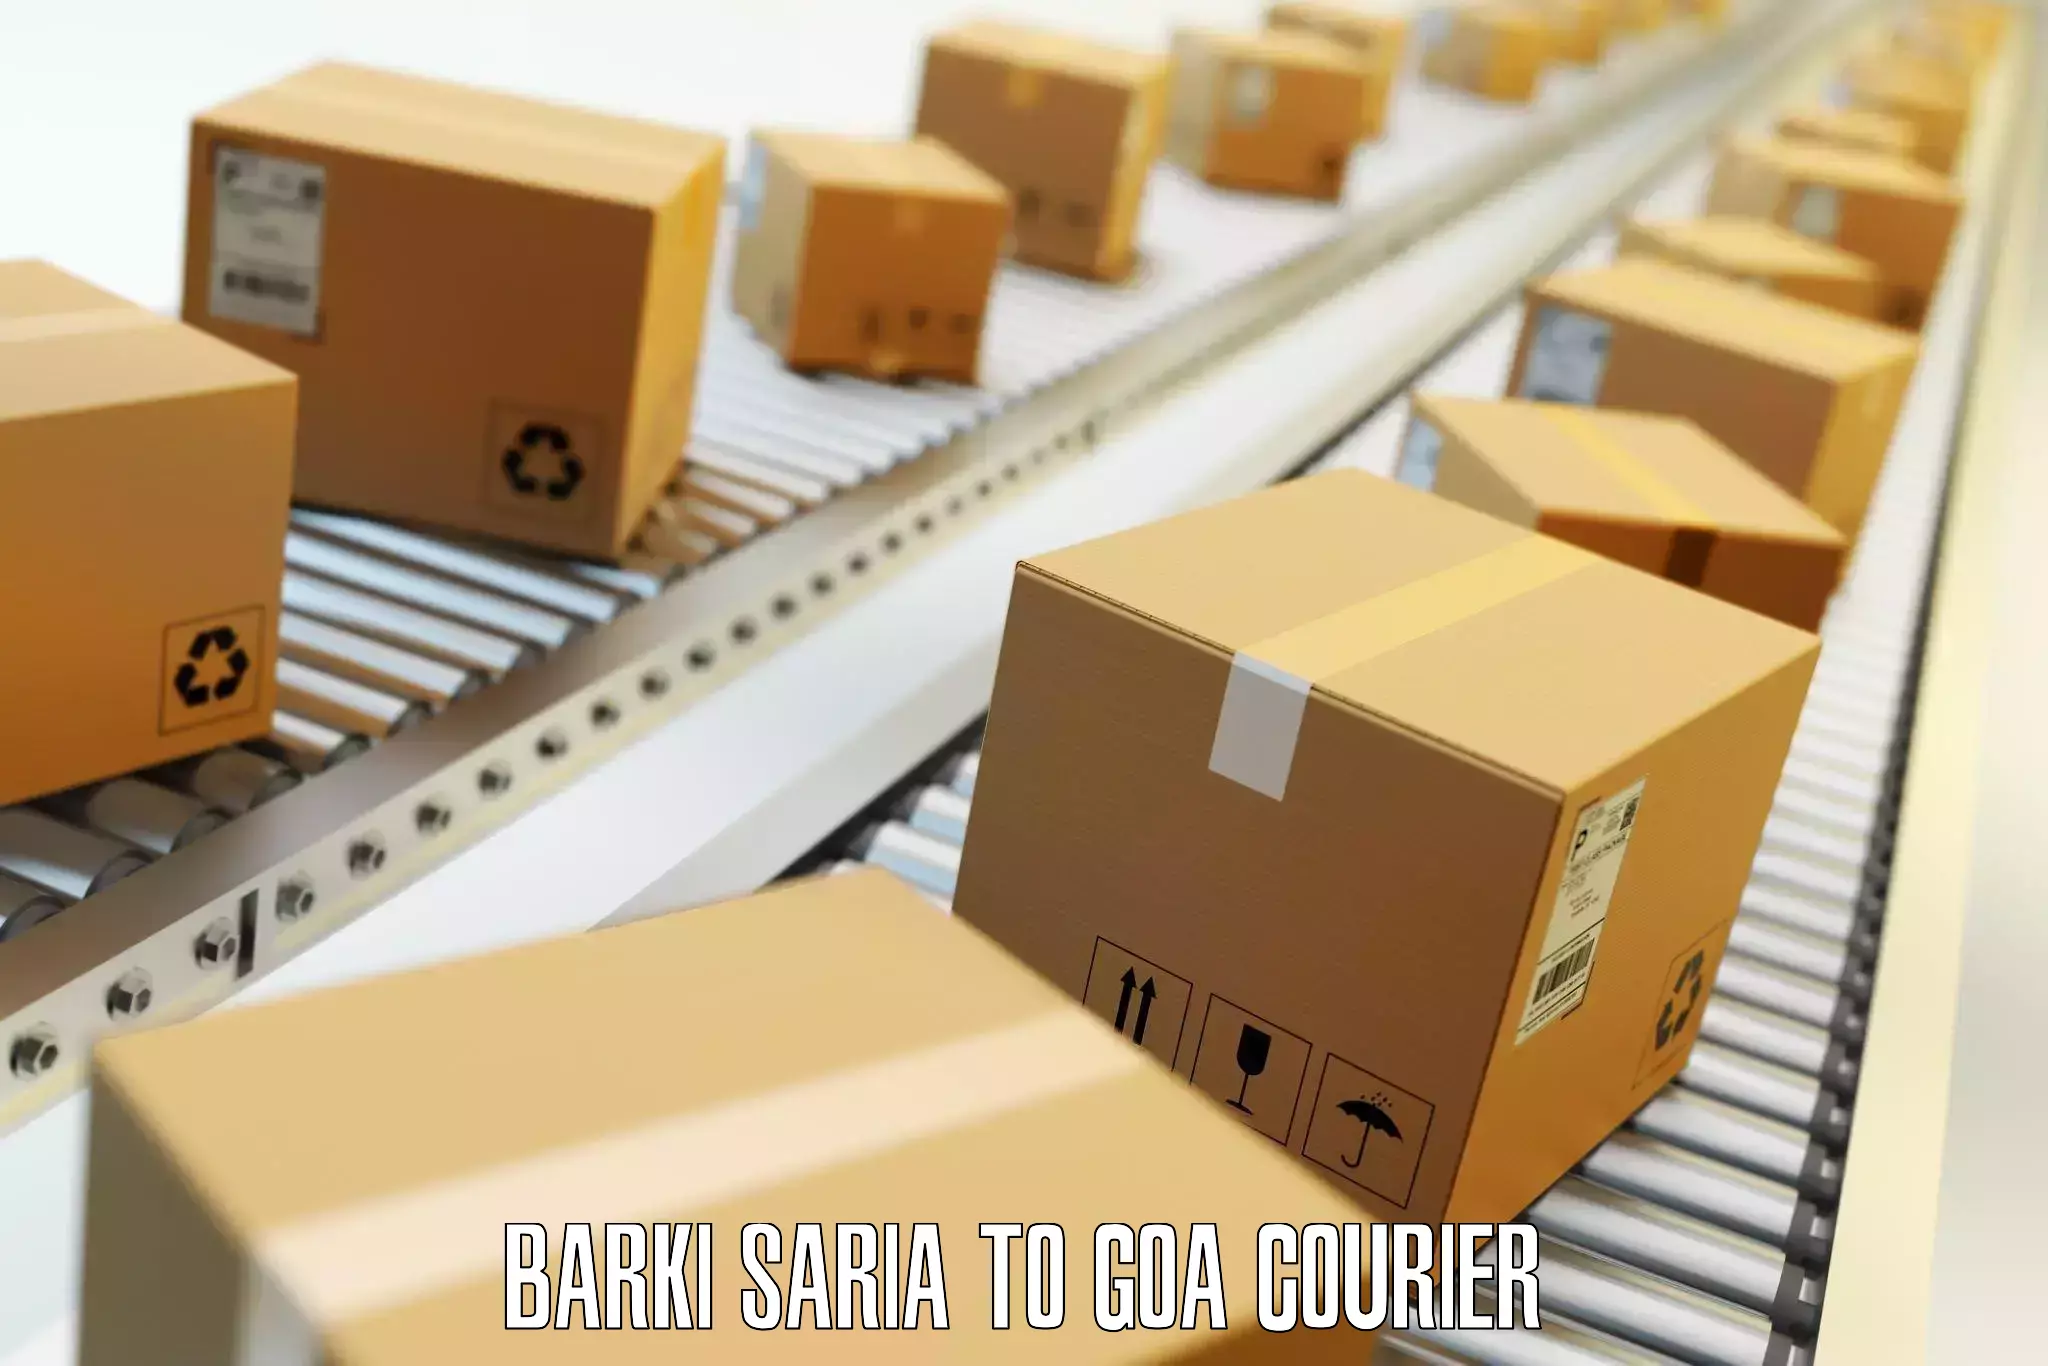 Luggage dispatch service Barki Saria to Goa